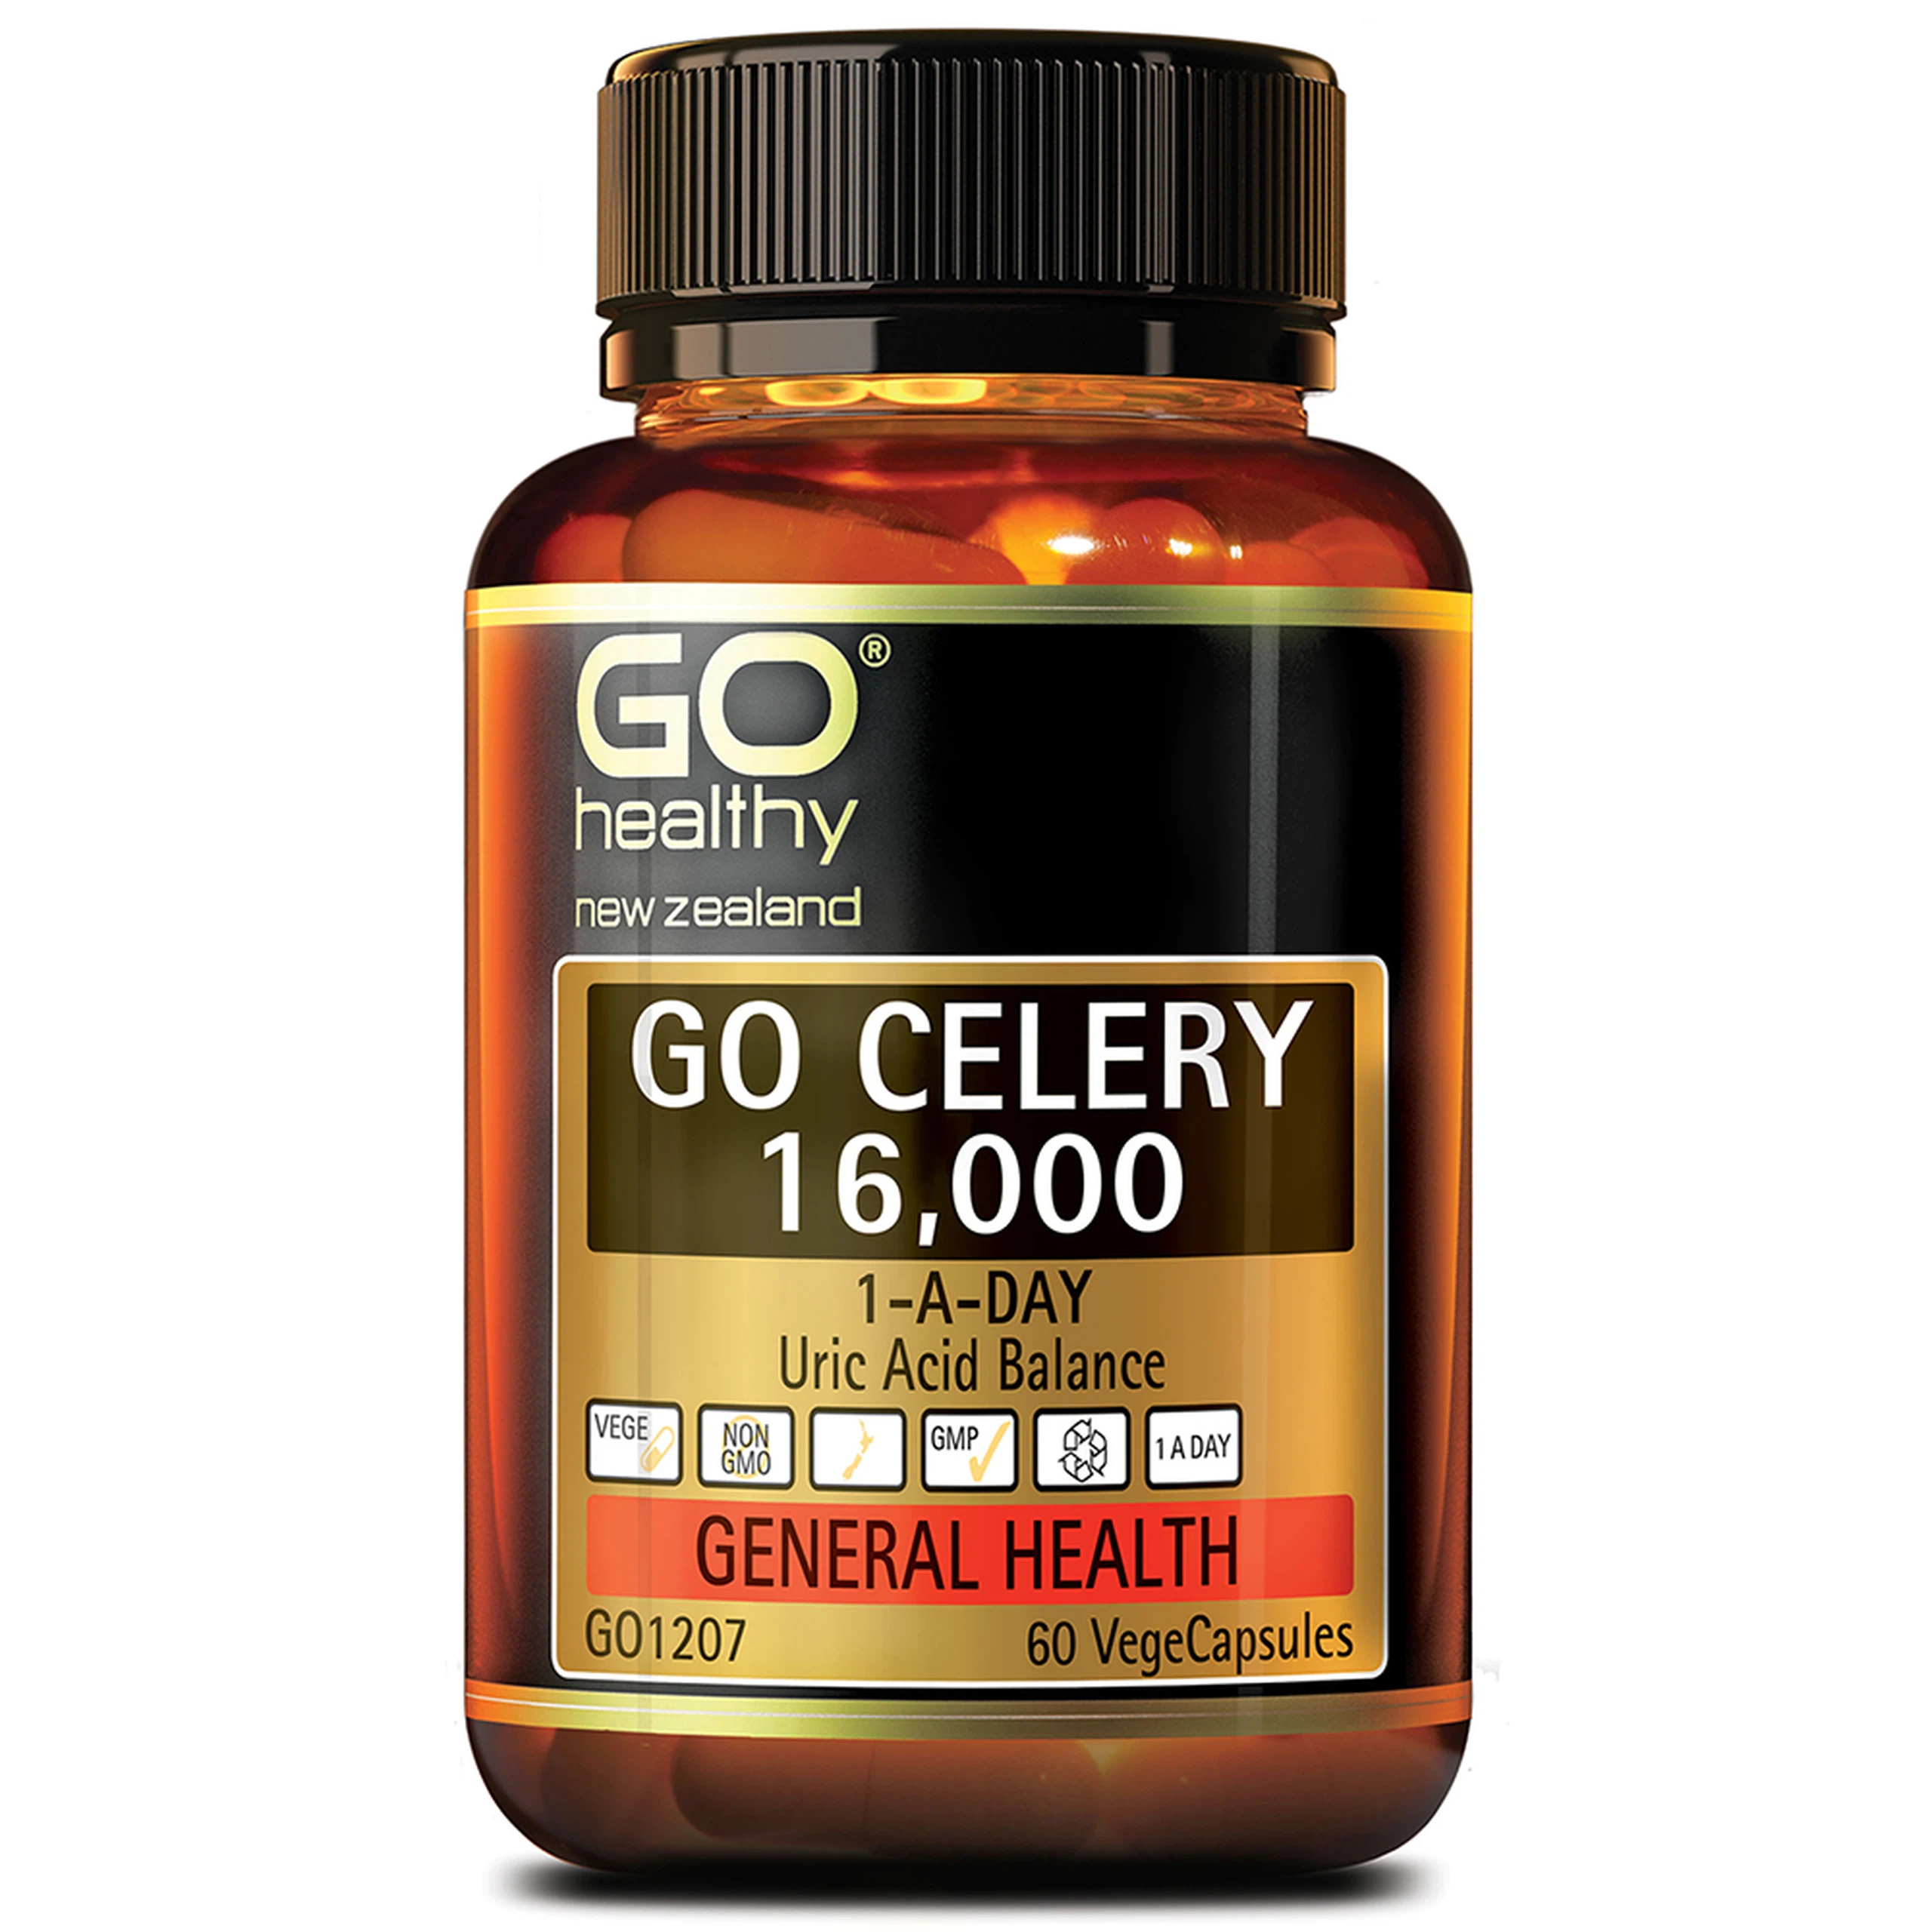 Viên uống Go Celery 16,000 hỗ trợ giảm uric acid, giảm triệu chứng sưng, đau do gout (60 viên)